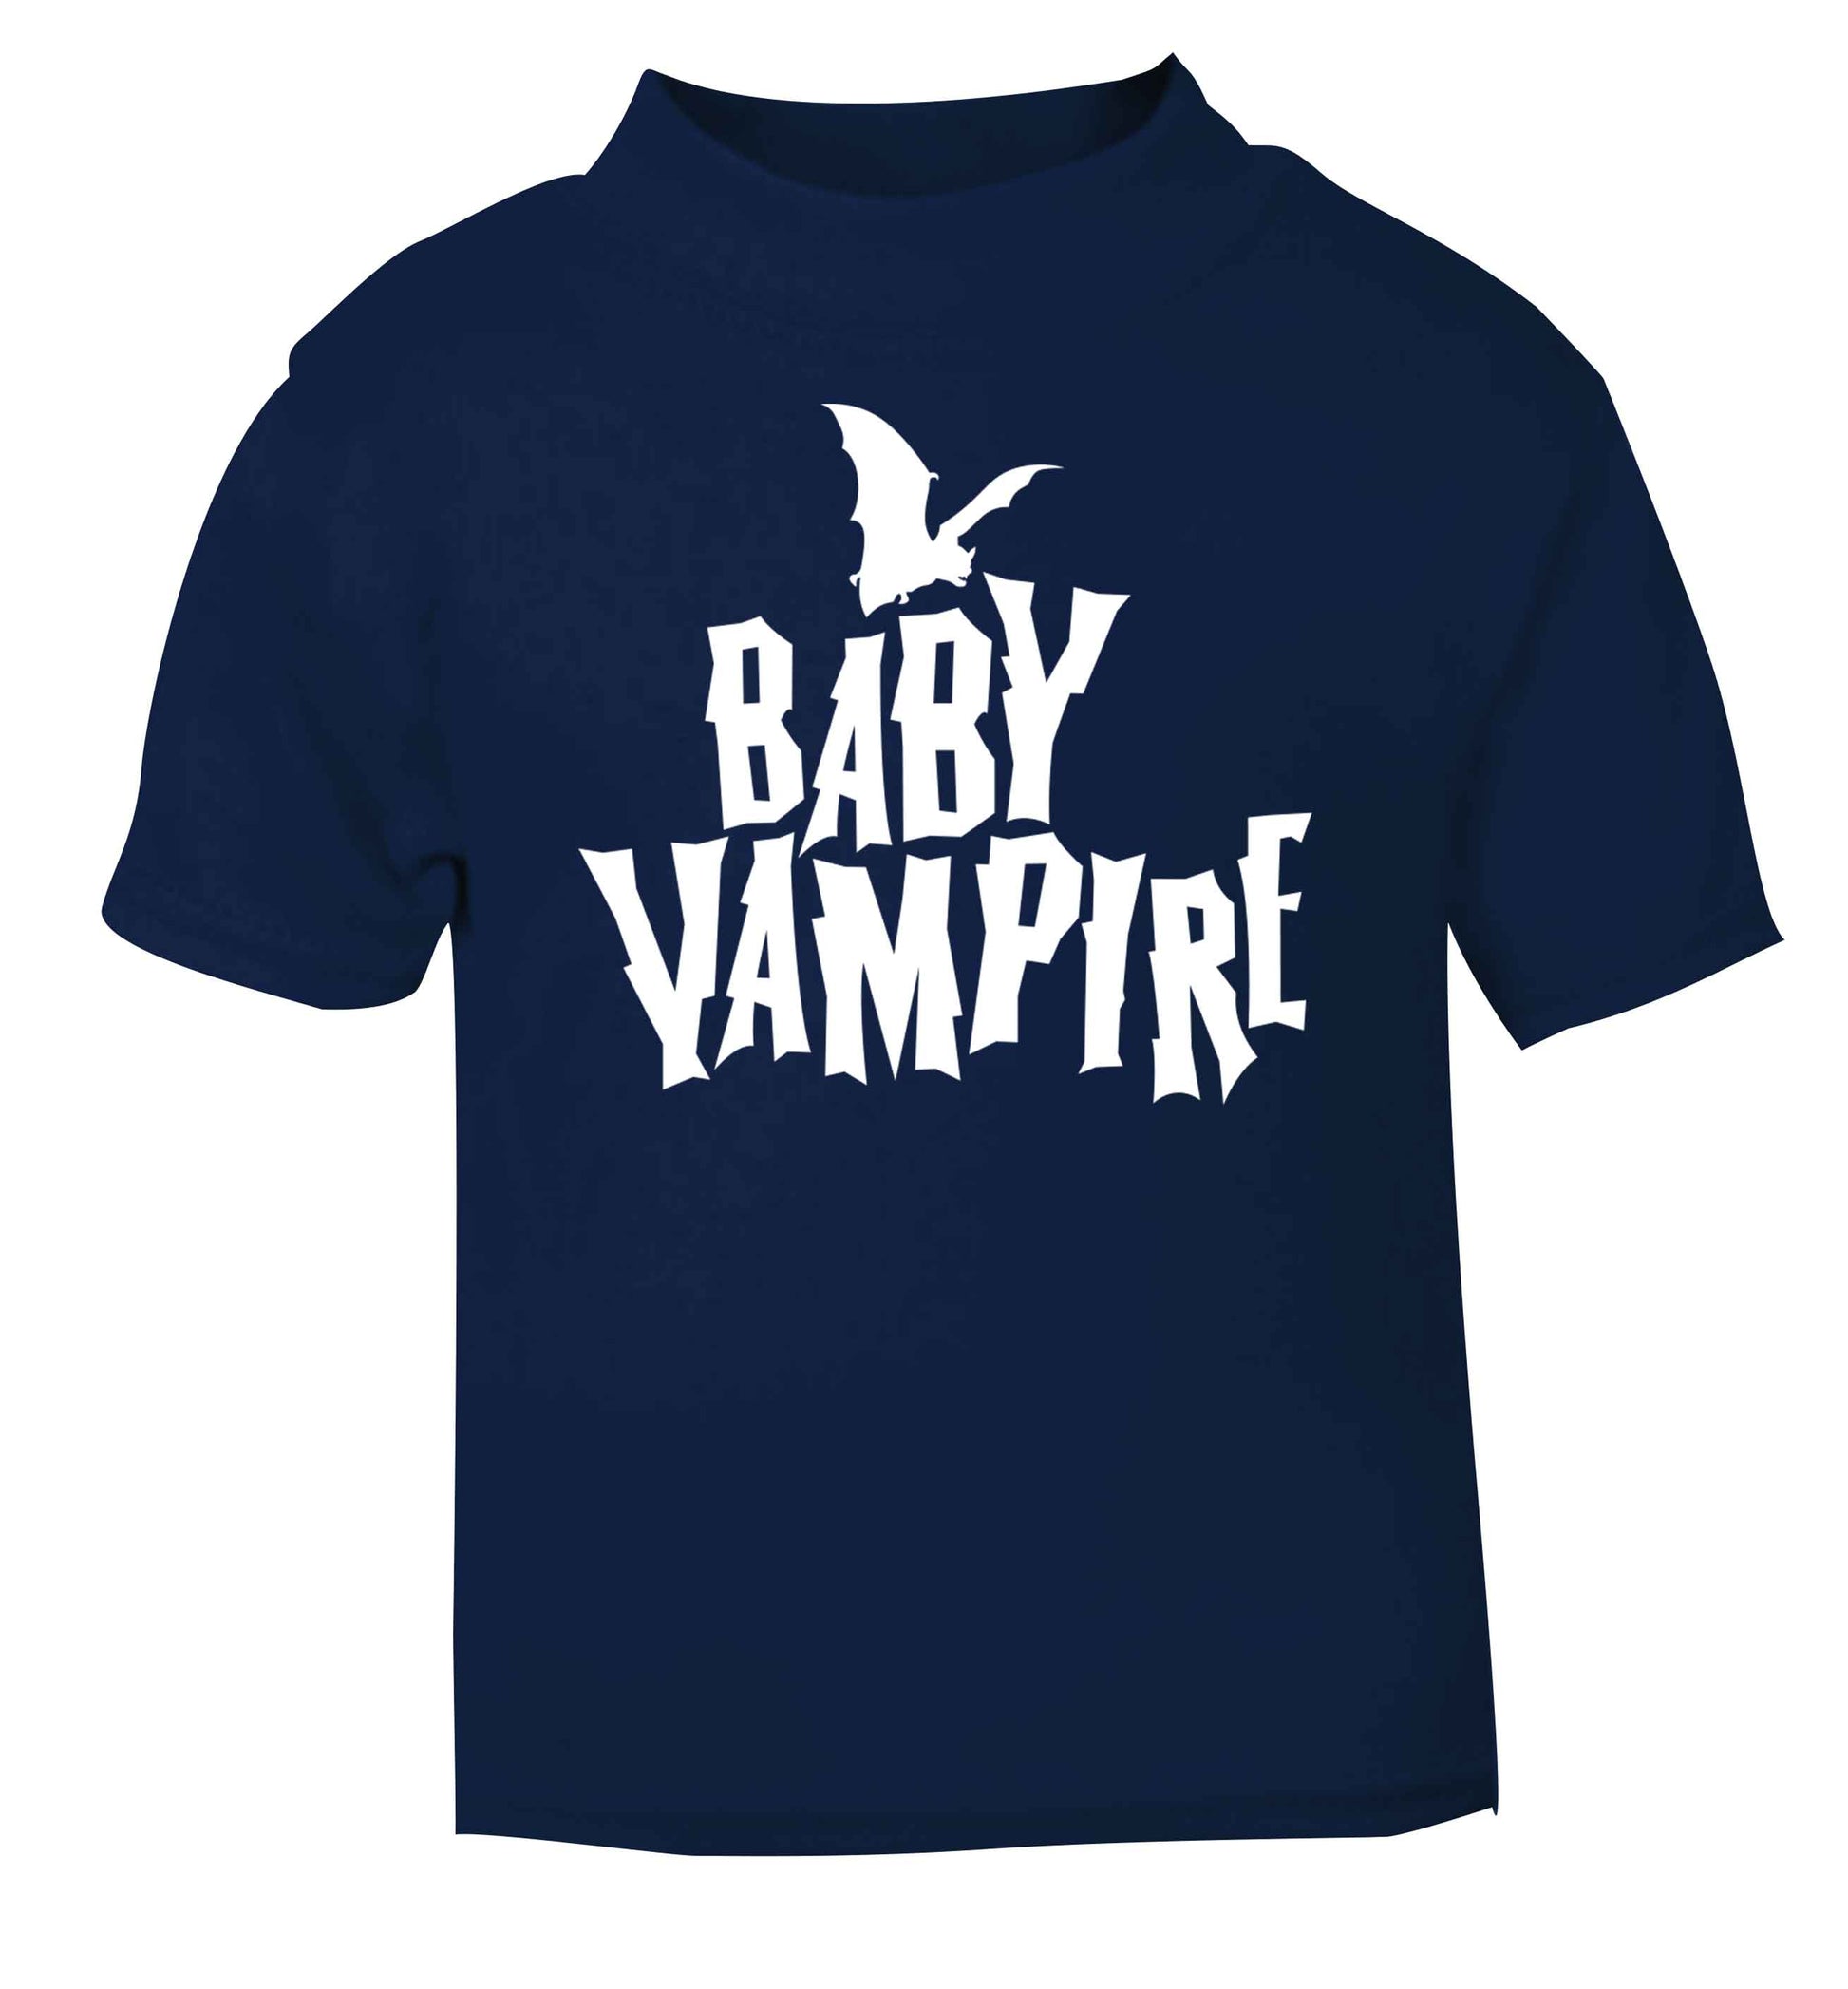 Baby vampire navy baby toddler Tshirt 2 Years